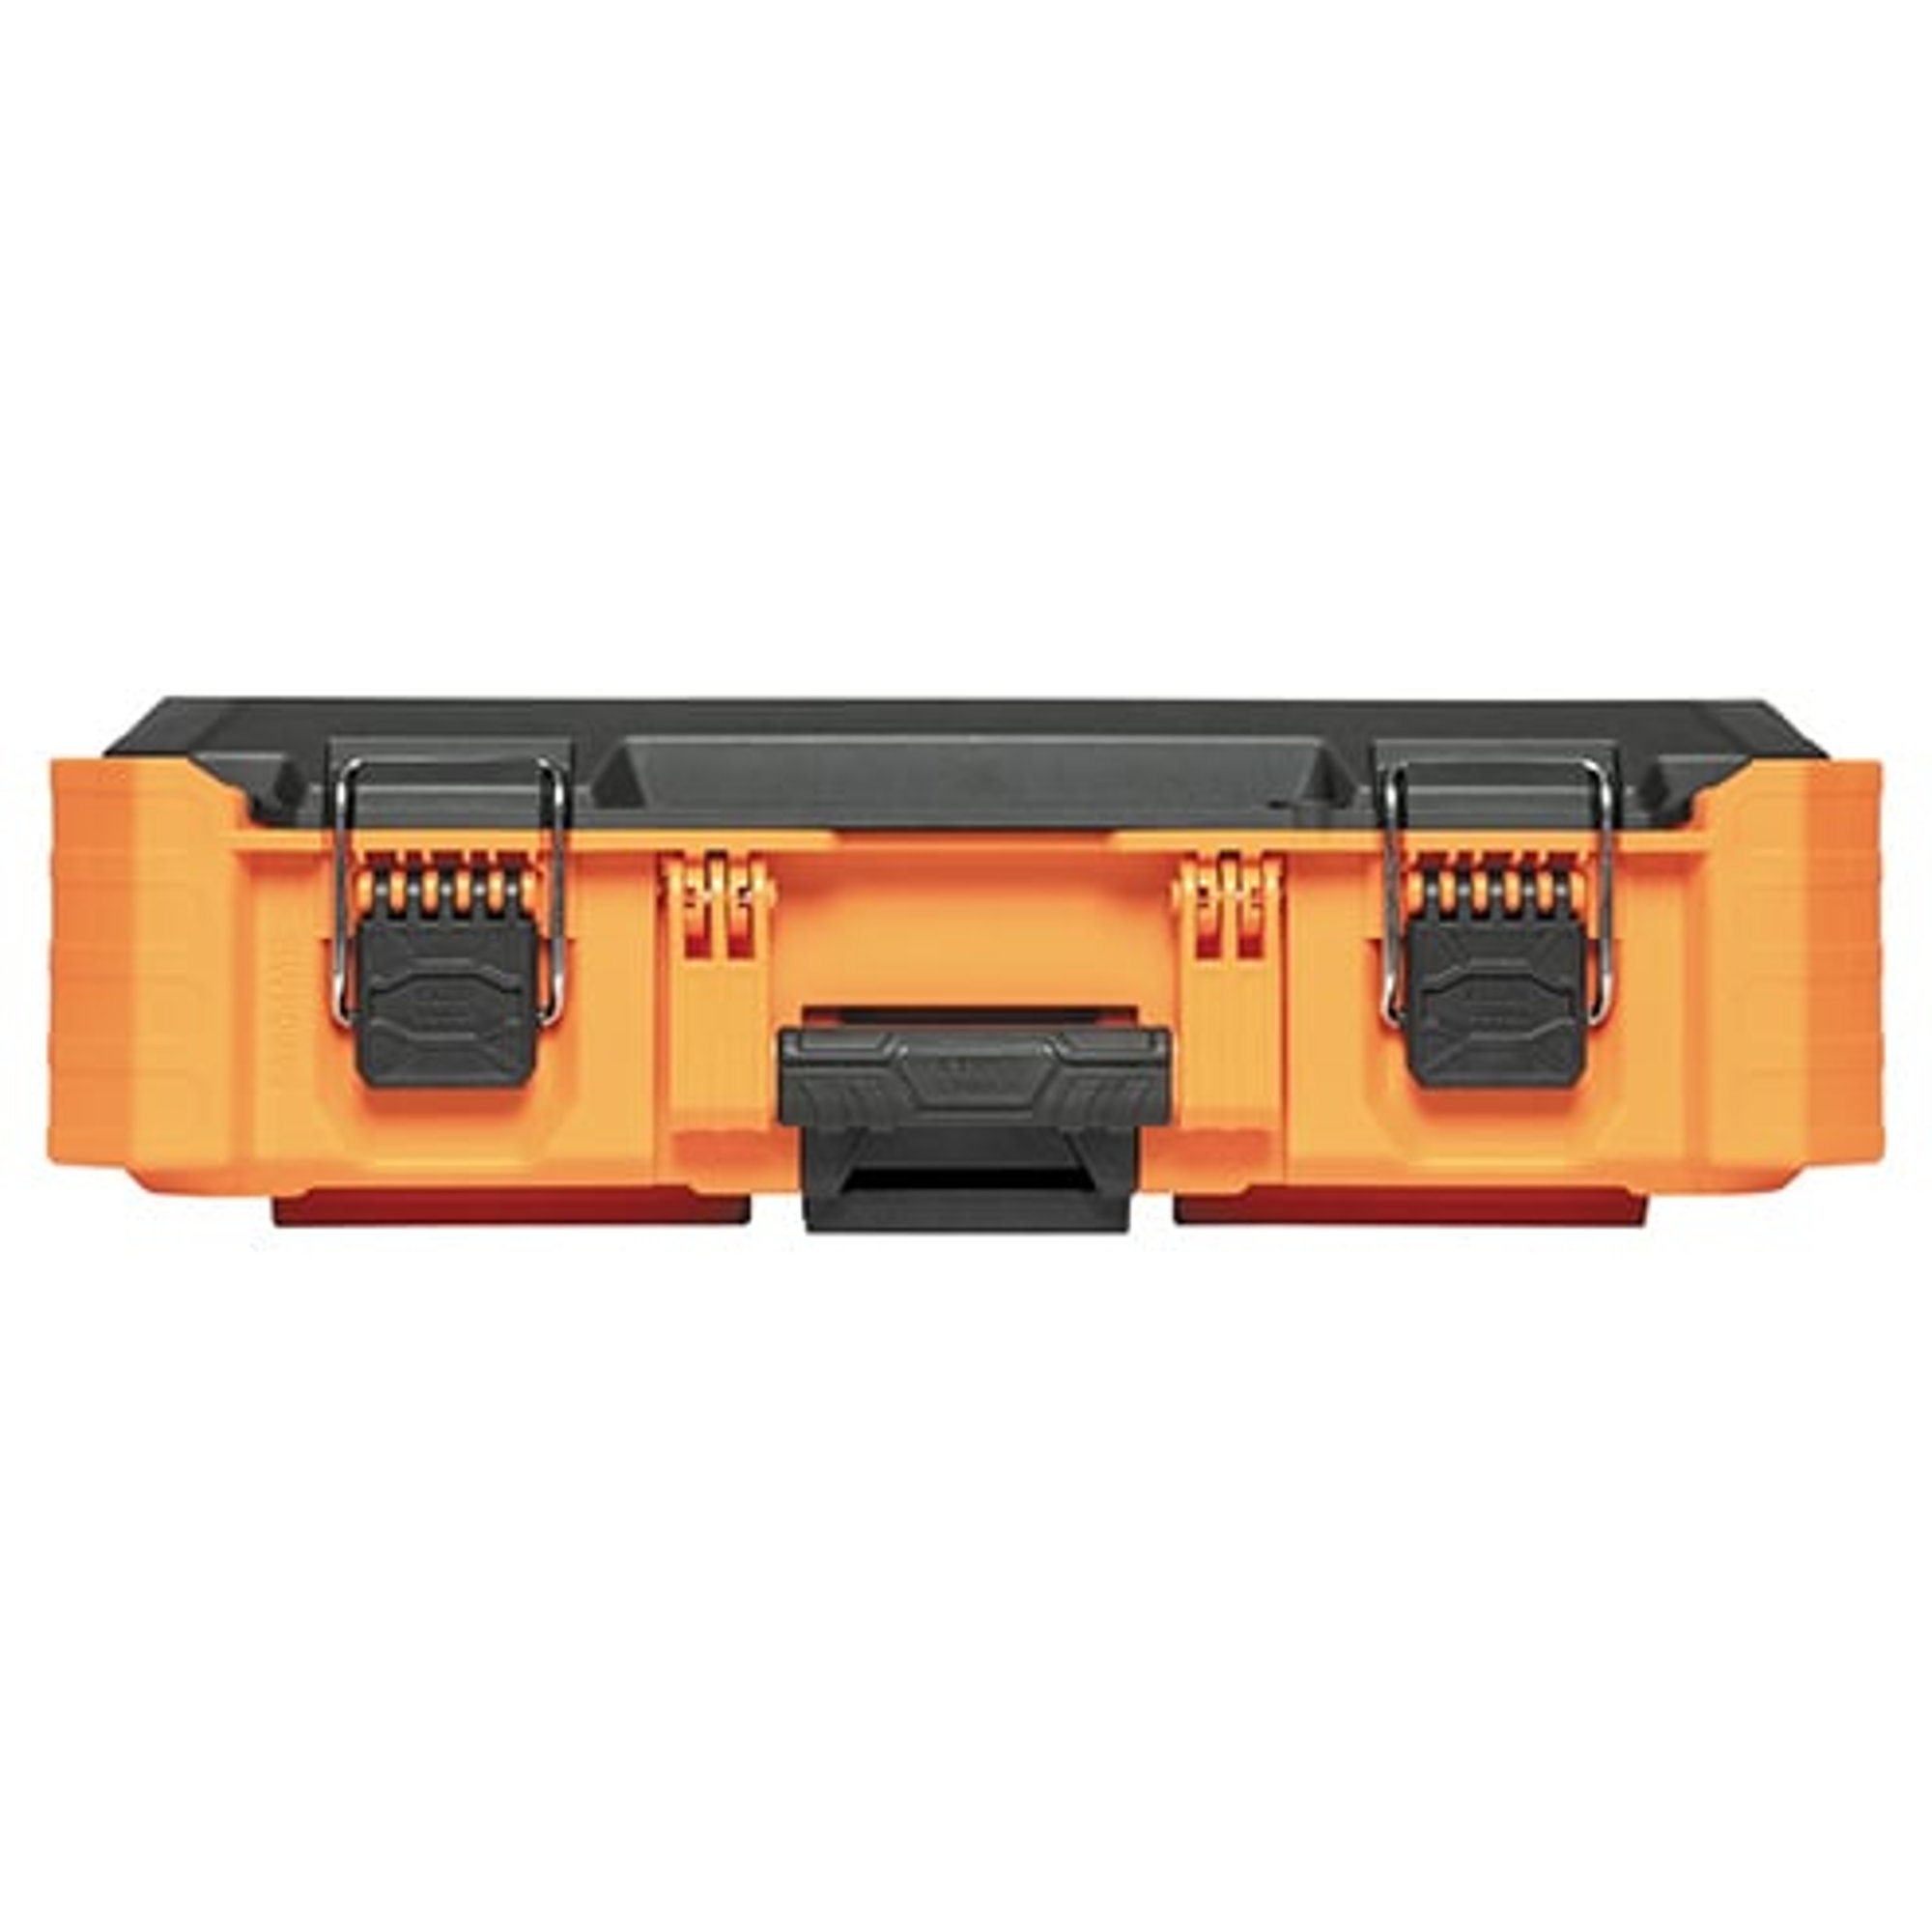 MODbox™ Small Toolbox - 54804MB